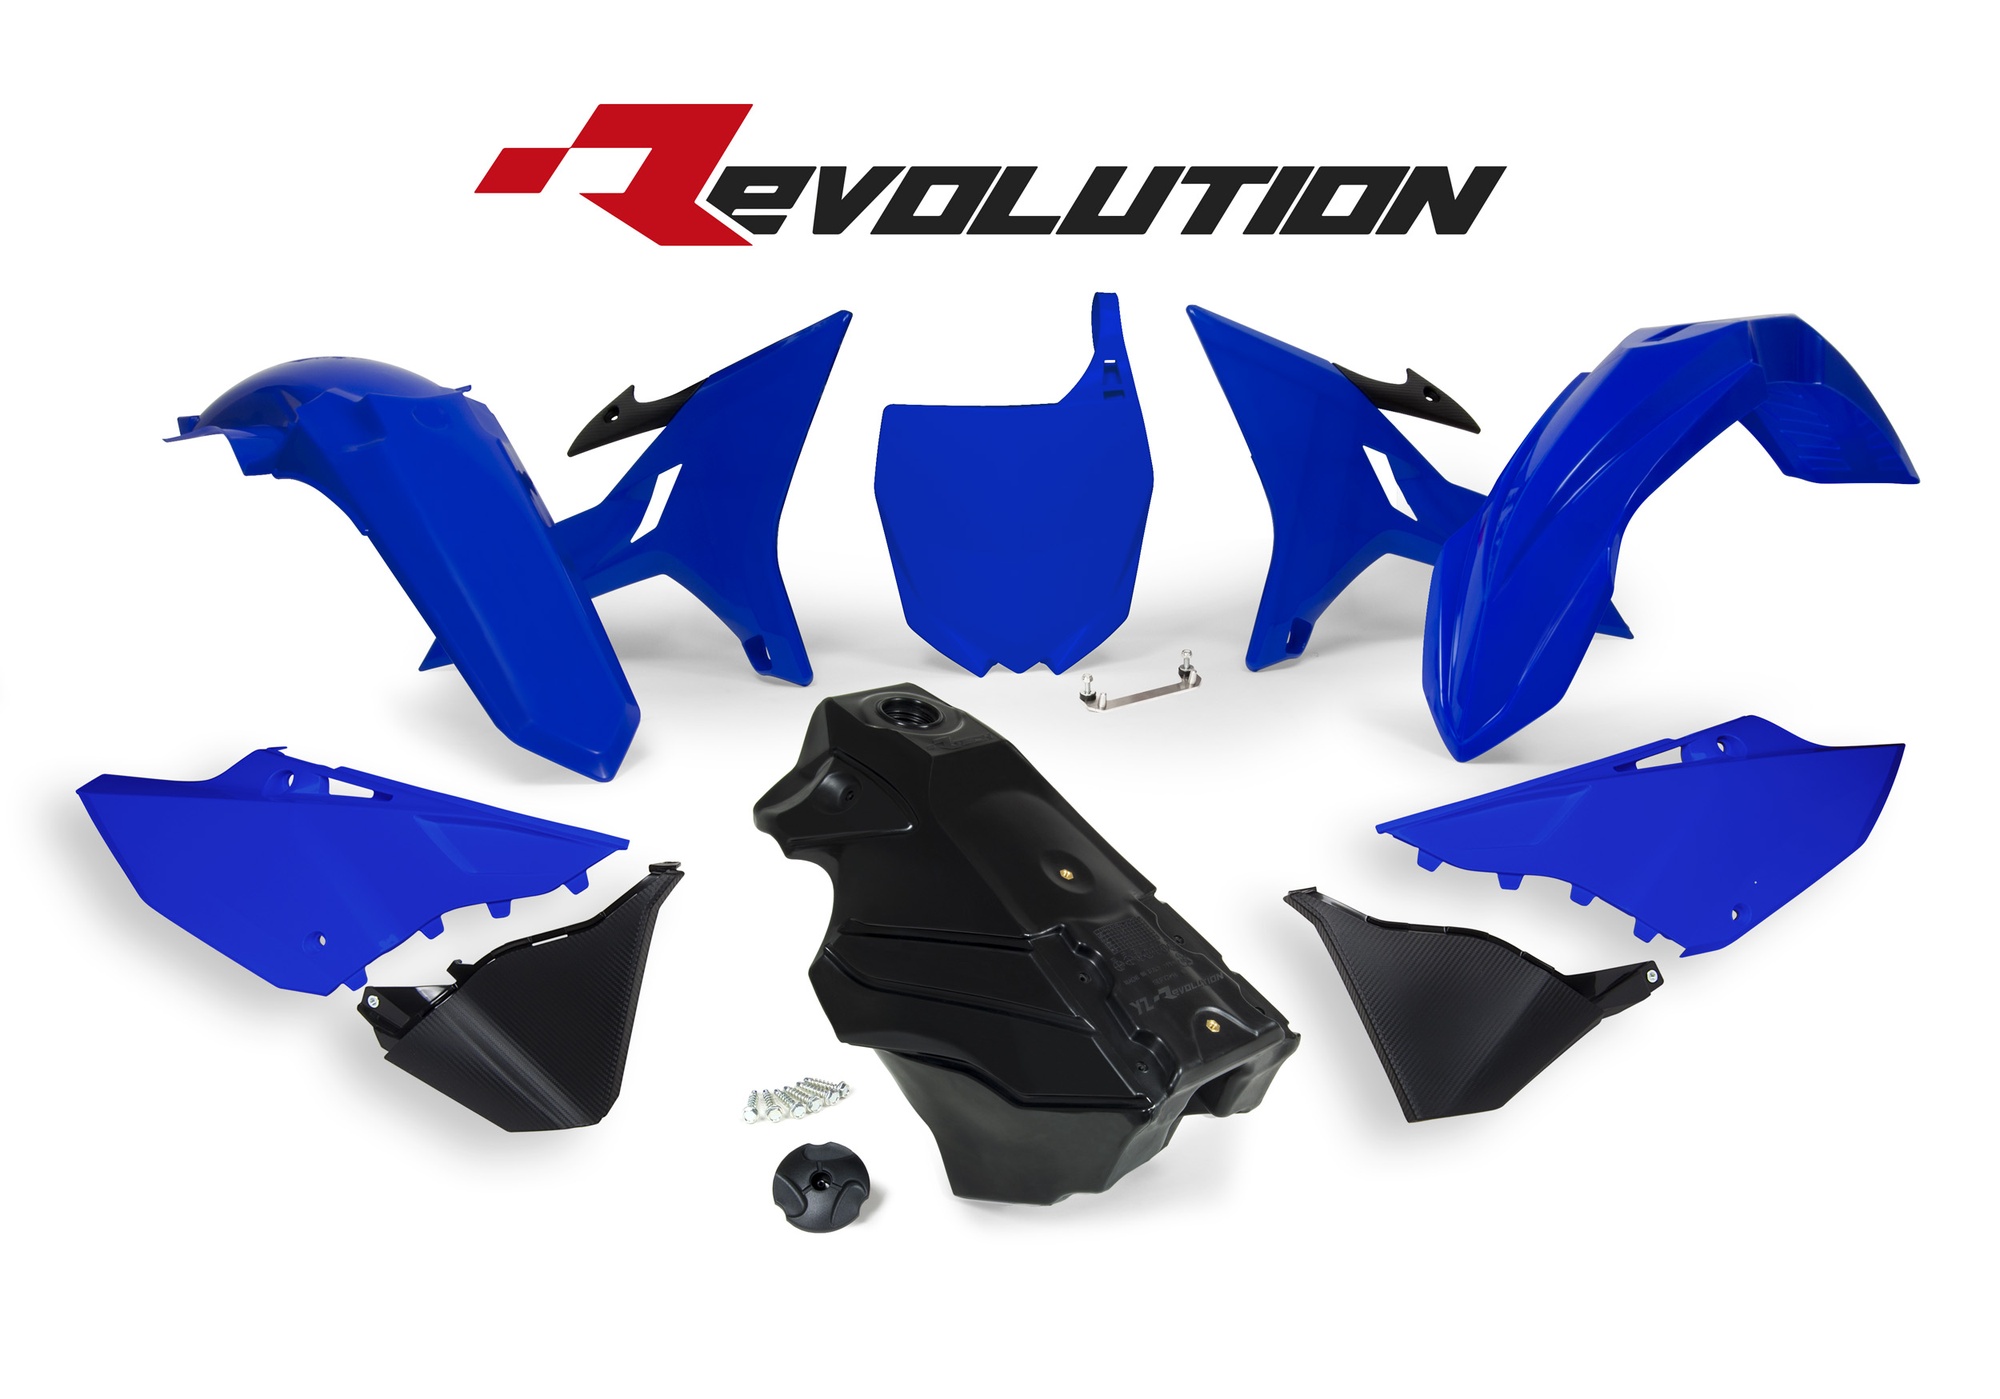 Obrázek produktu sada plastů Yamaha - REVOLUTION KIT pro YZ 125/250 02-21, RTECH (modro-černá, 7 dílů)